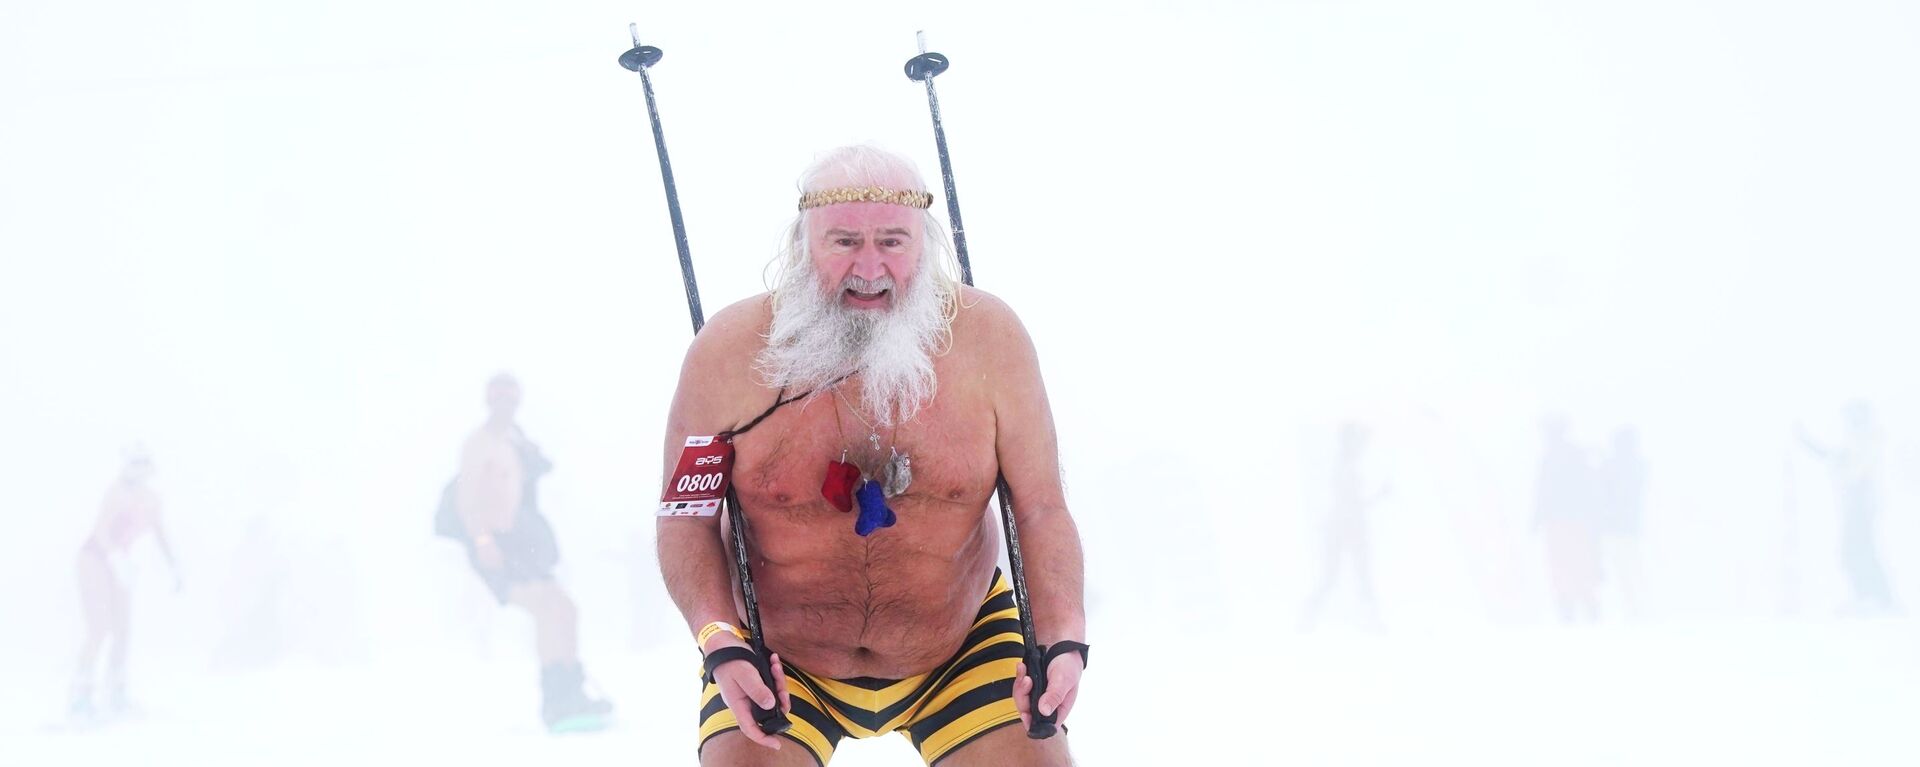 Участник высокогорного карнавала BoogelWoogel-2019 во время массового спуска с горы в купальниках на горнолыжном курорте Роза Хутор в Сочи - Sputnik Латвия, 1920, 05.02.2021